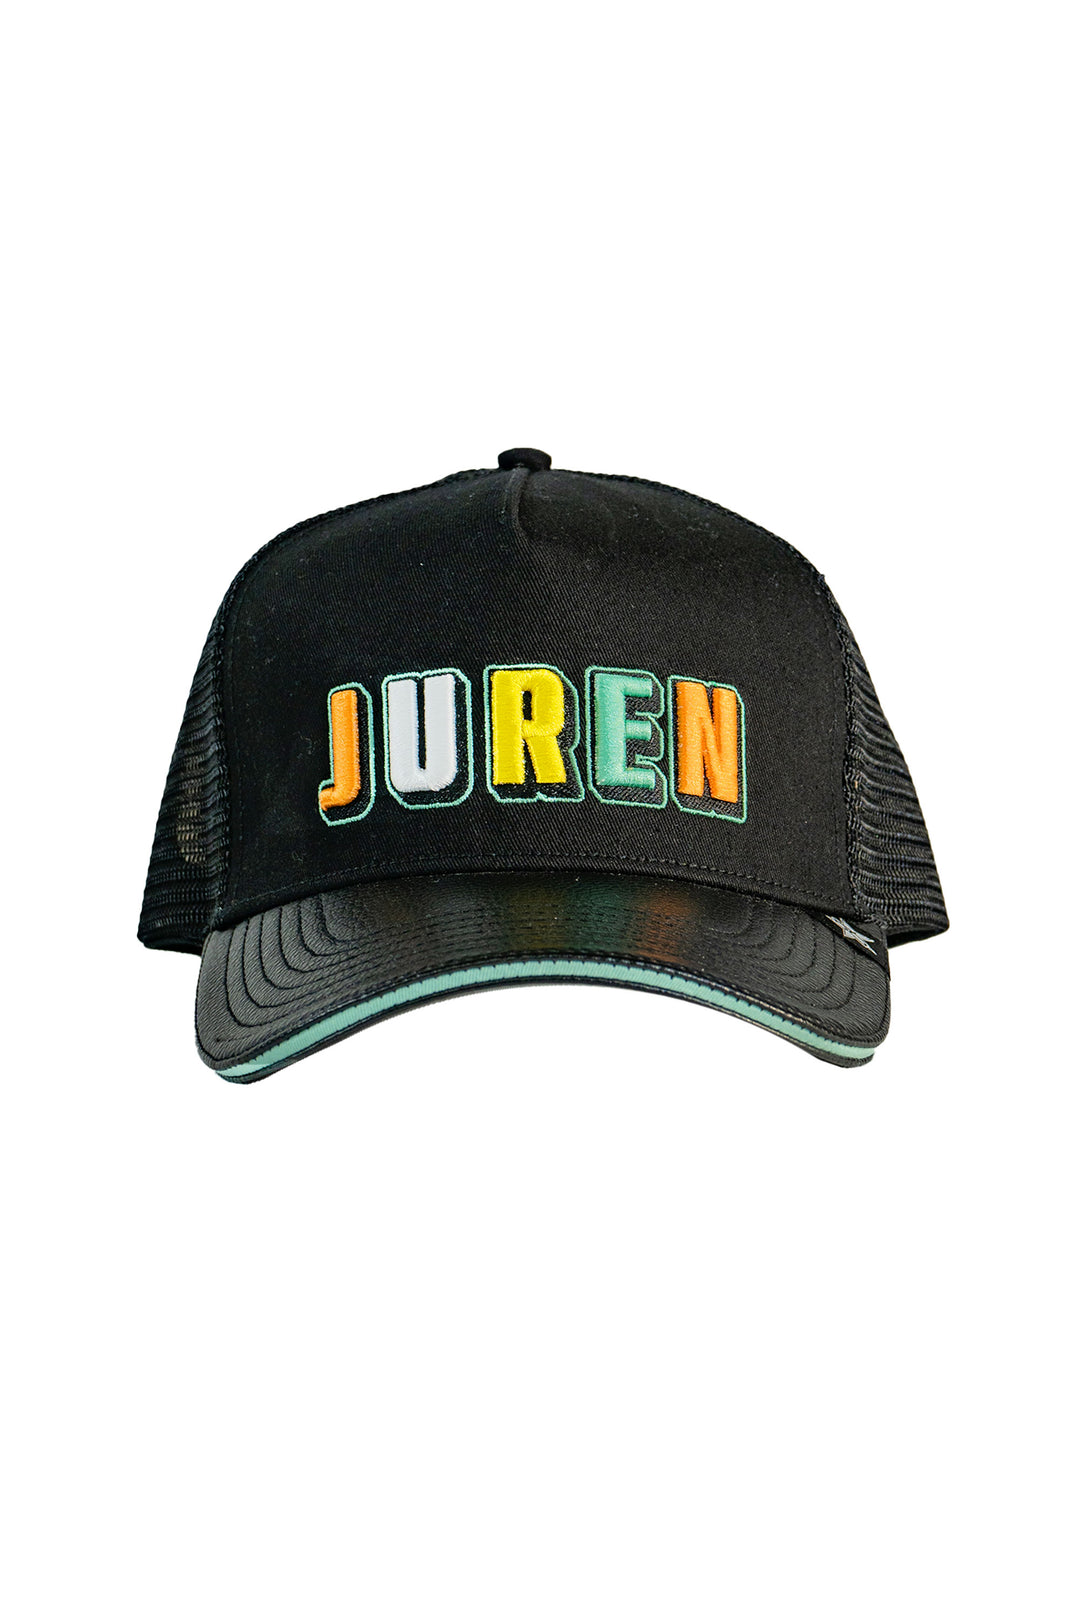 Juren Bigdawg Logo Trucker Hat